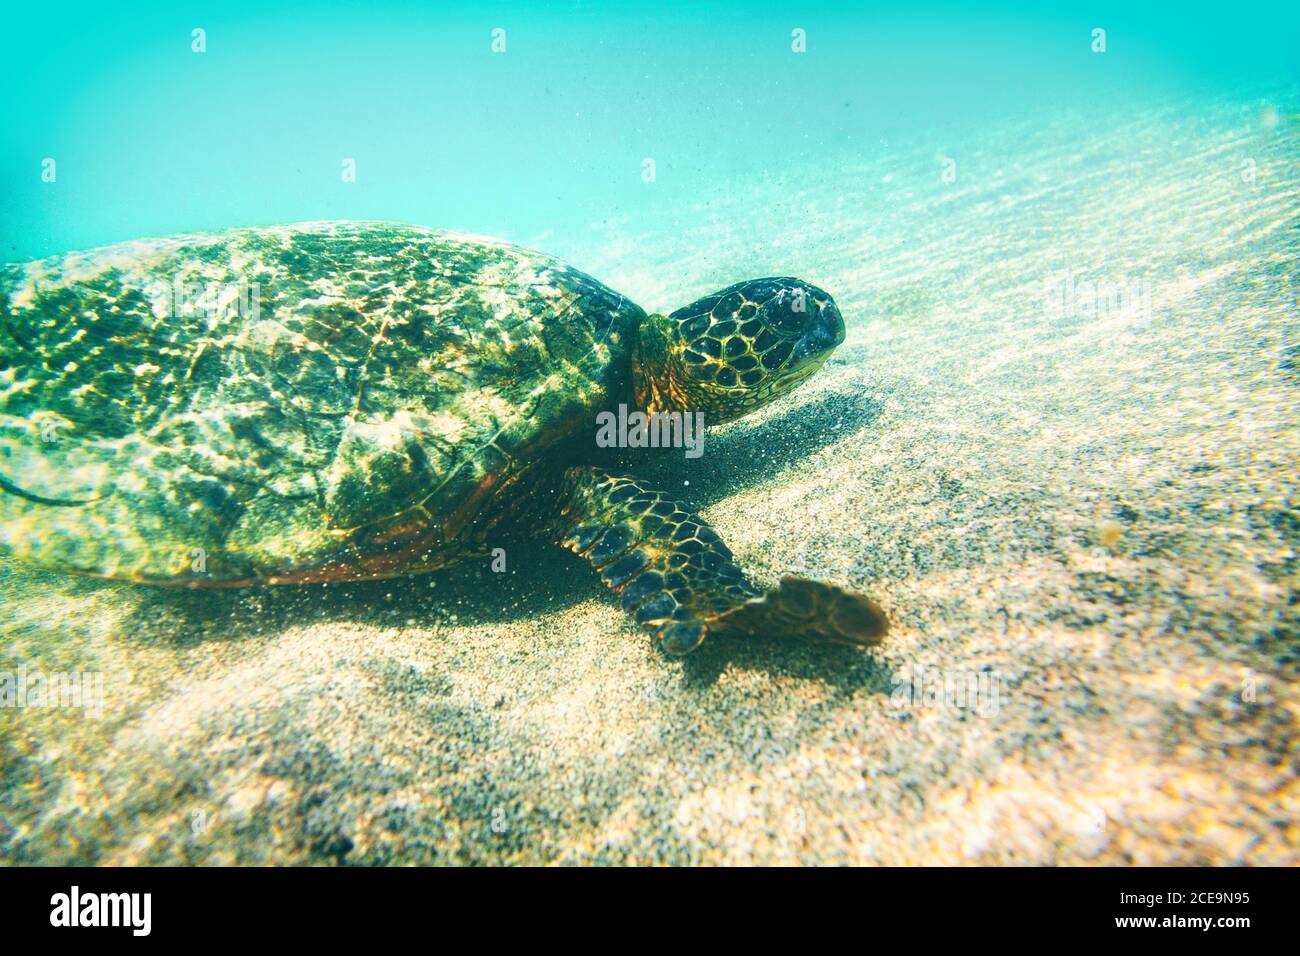 Fotografia subacquea delle tartarughe verdi nelle Hawaii - fauna marina animale nuoto in acque turchesi - conservazione dell'ambiente , eco-friendly Foto Stock